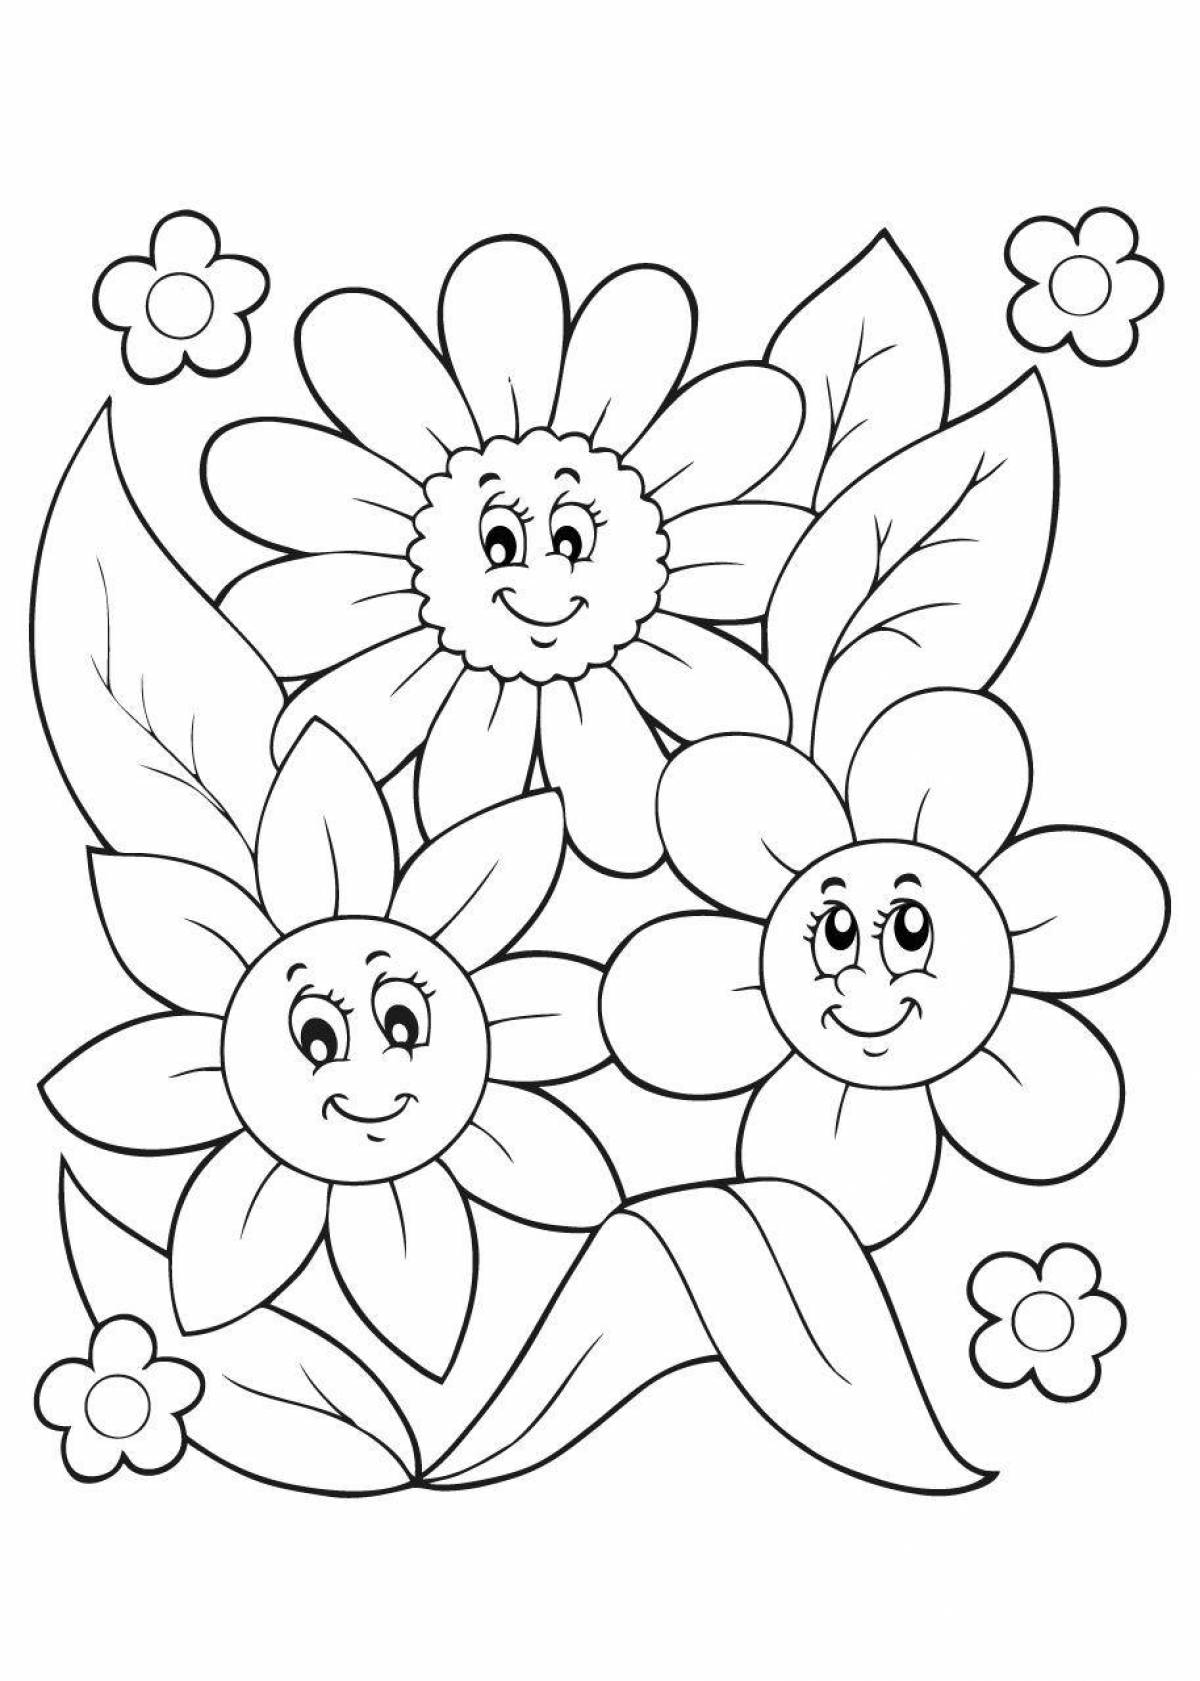 Прекрасная раскраска цветы для детей 3 4